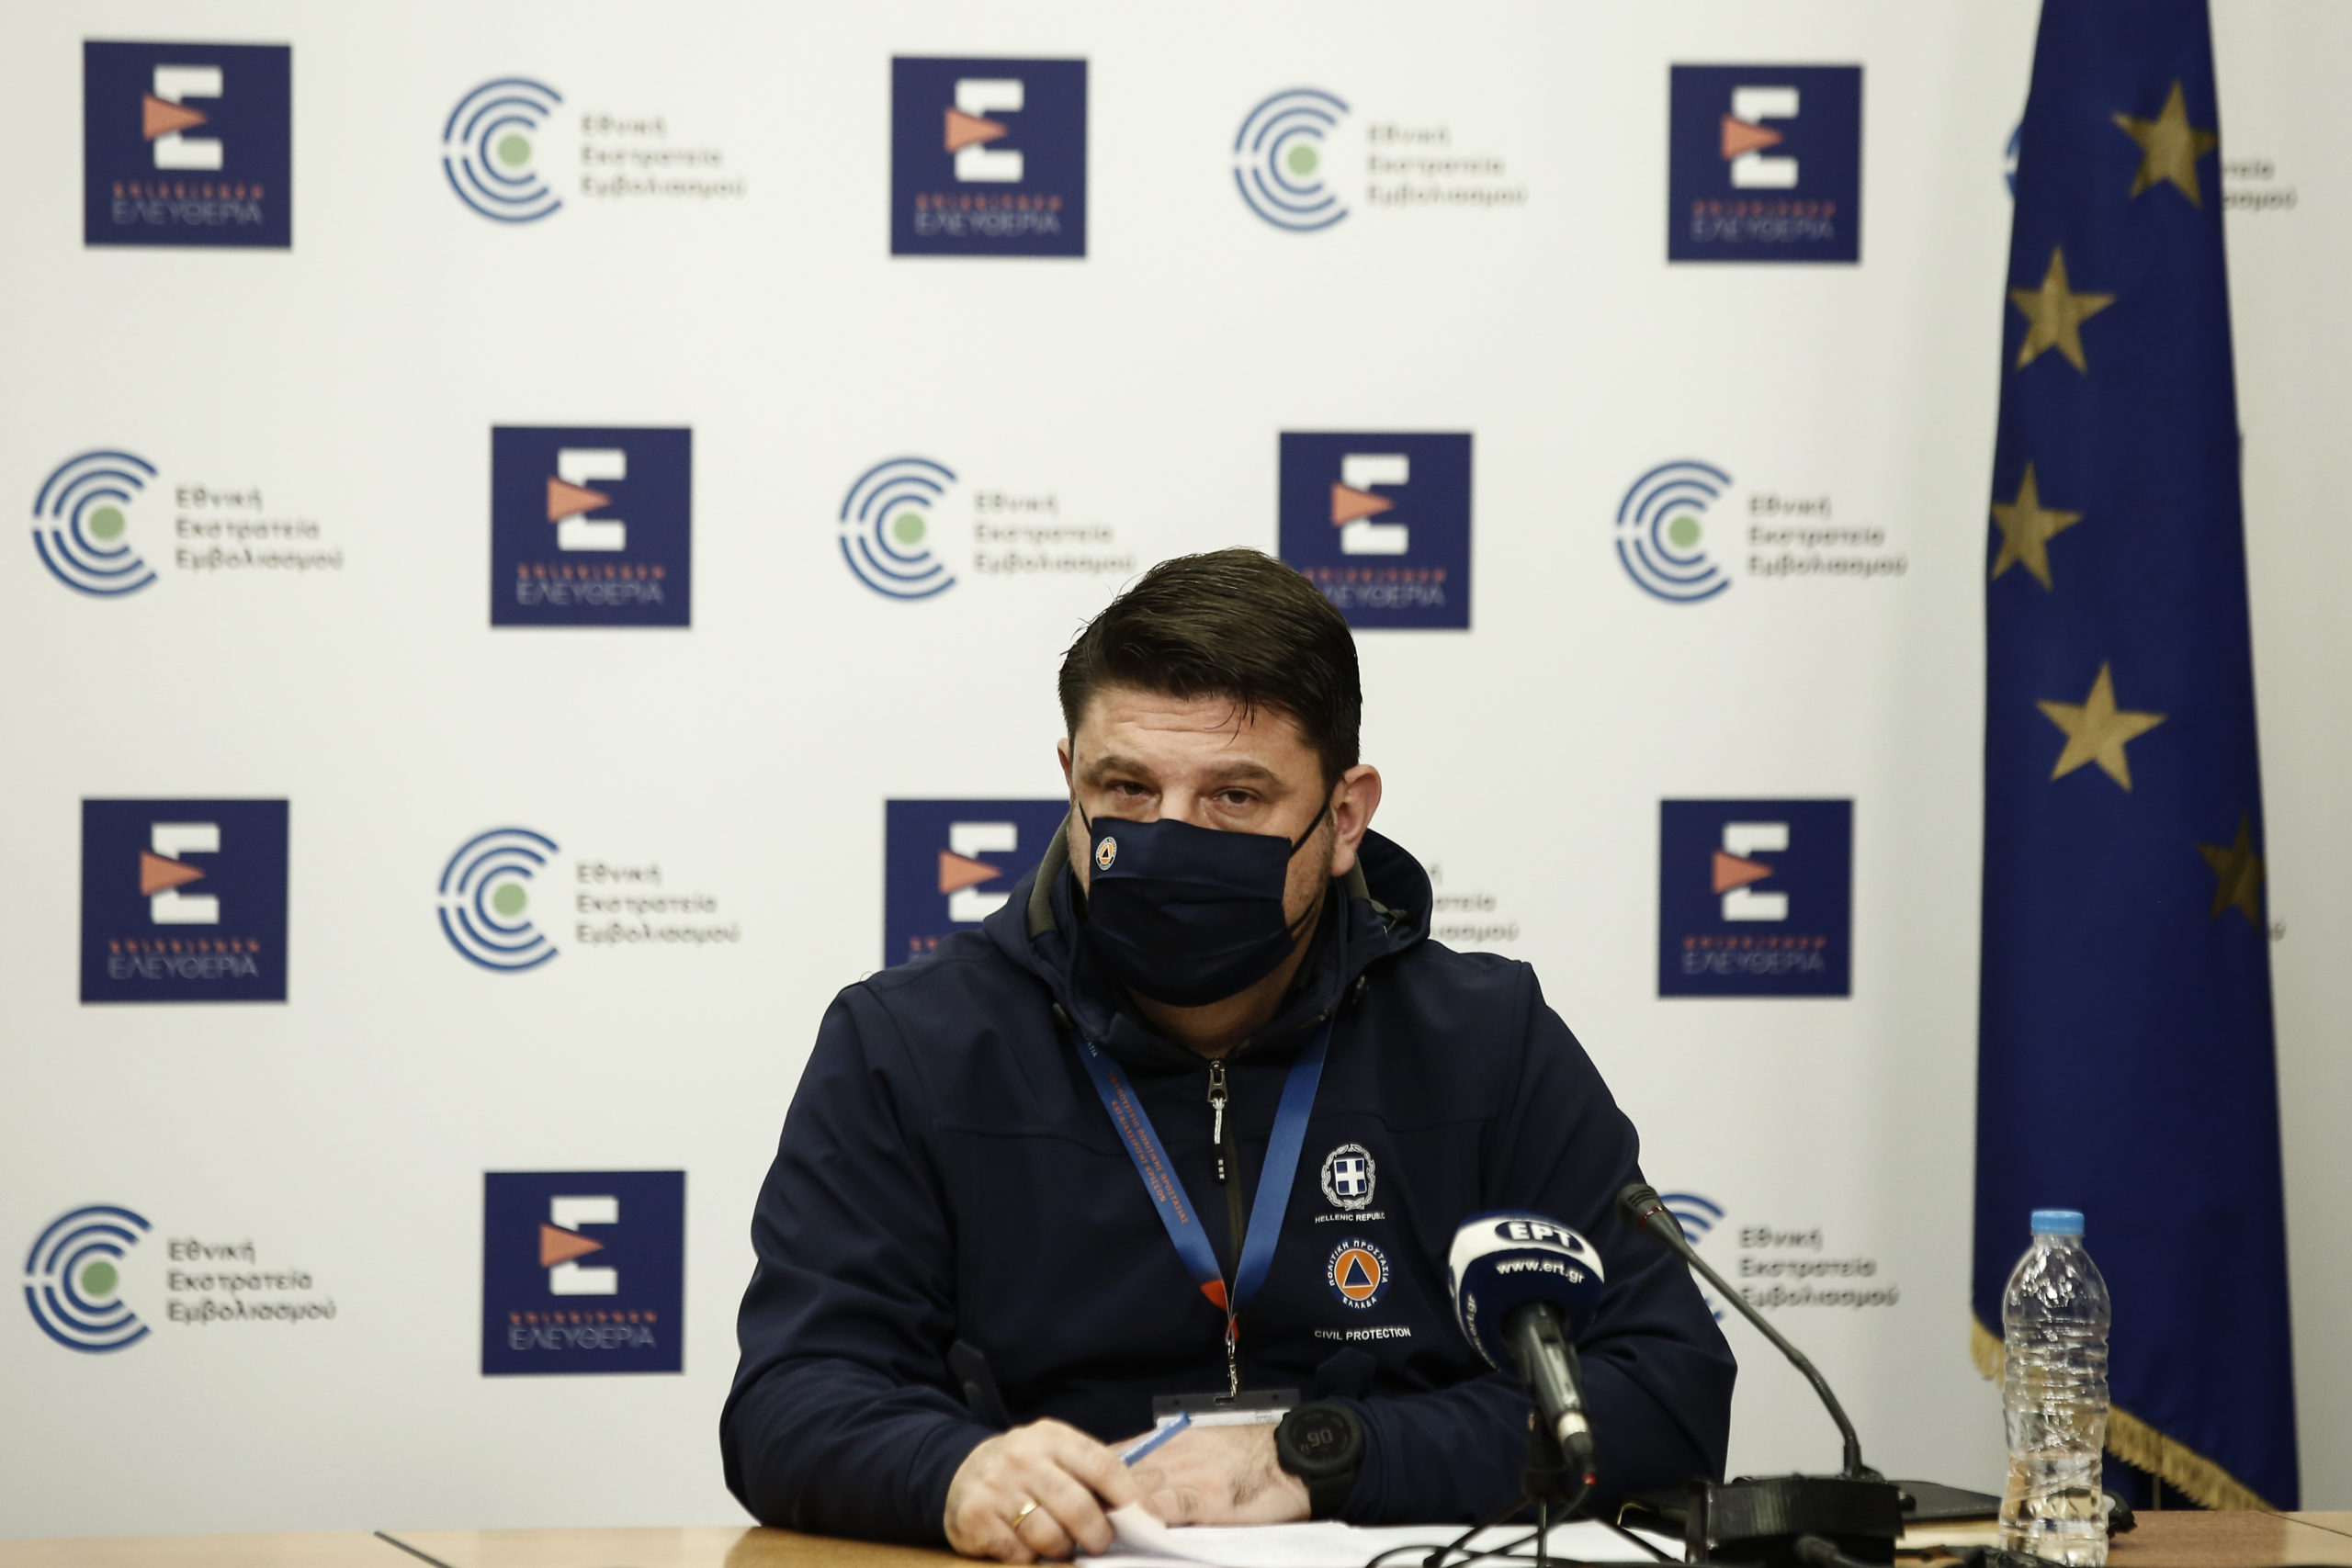 Νίκος Χαρδαλιάς: "Θα εισηγηθώ την αναστολή της Super League 2"